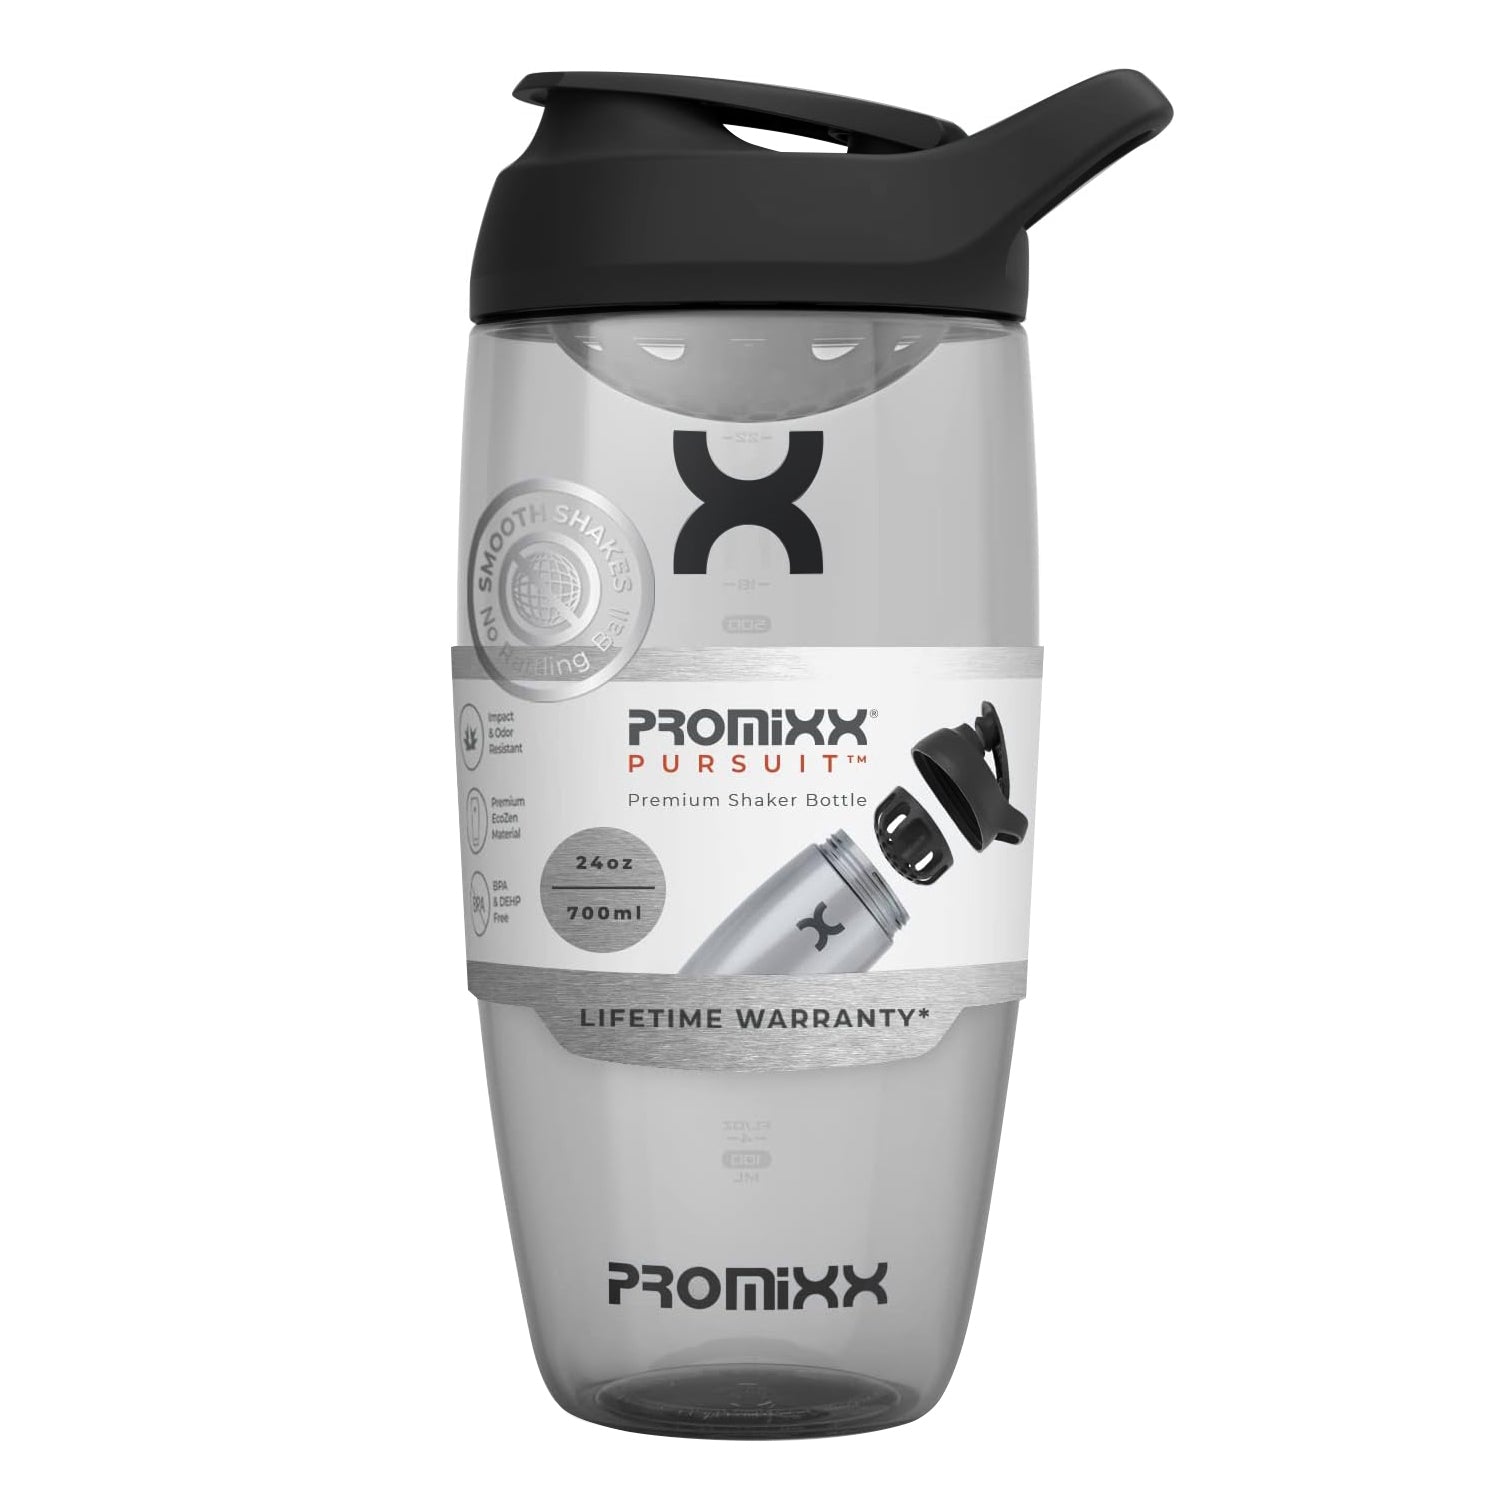 PURSUIT  Classic Protein Shaker Bottle - PROMiXX